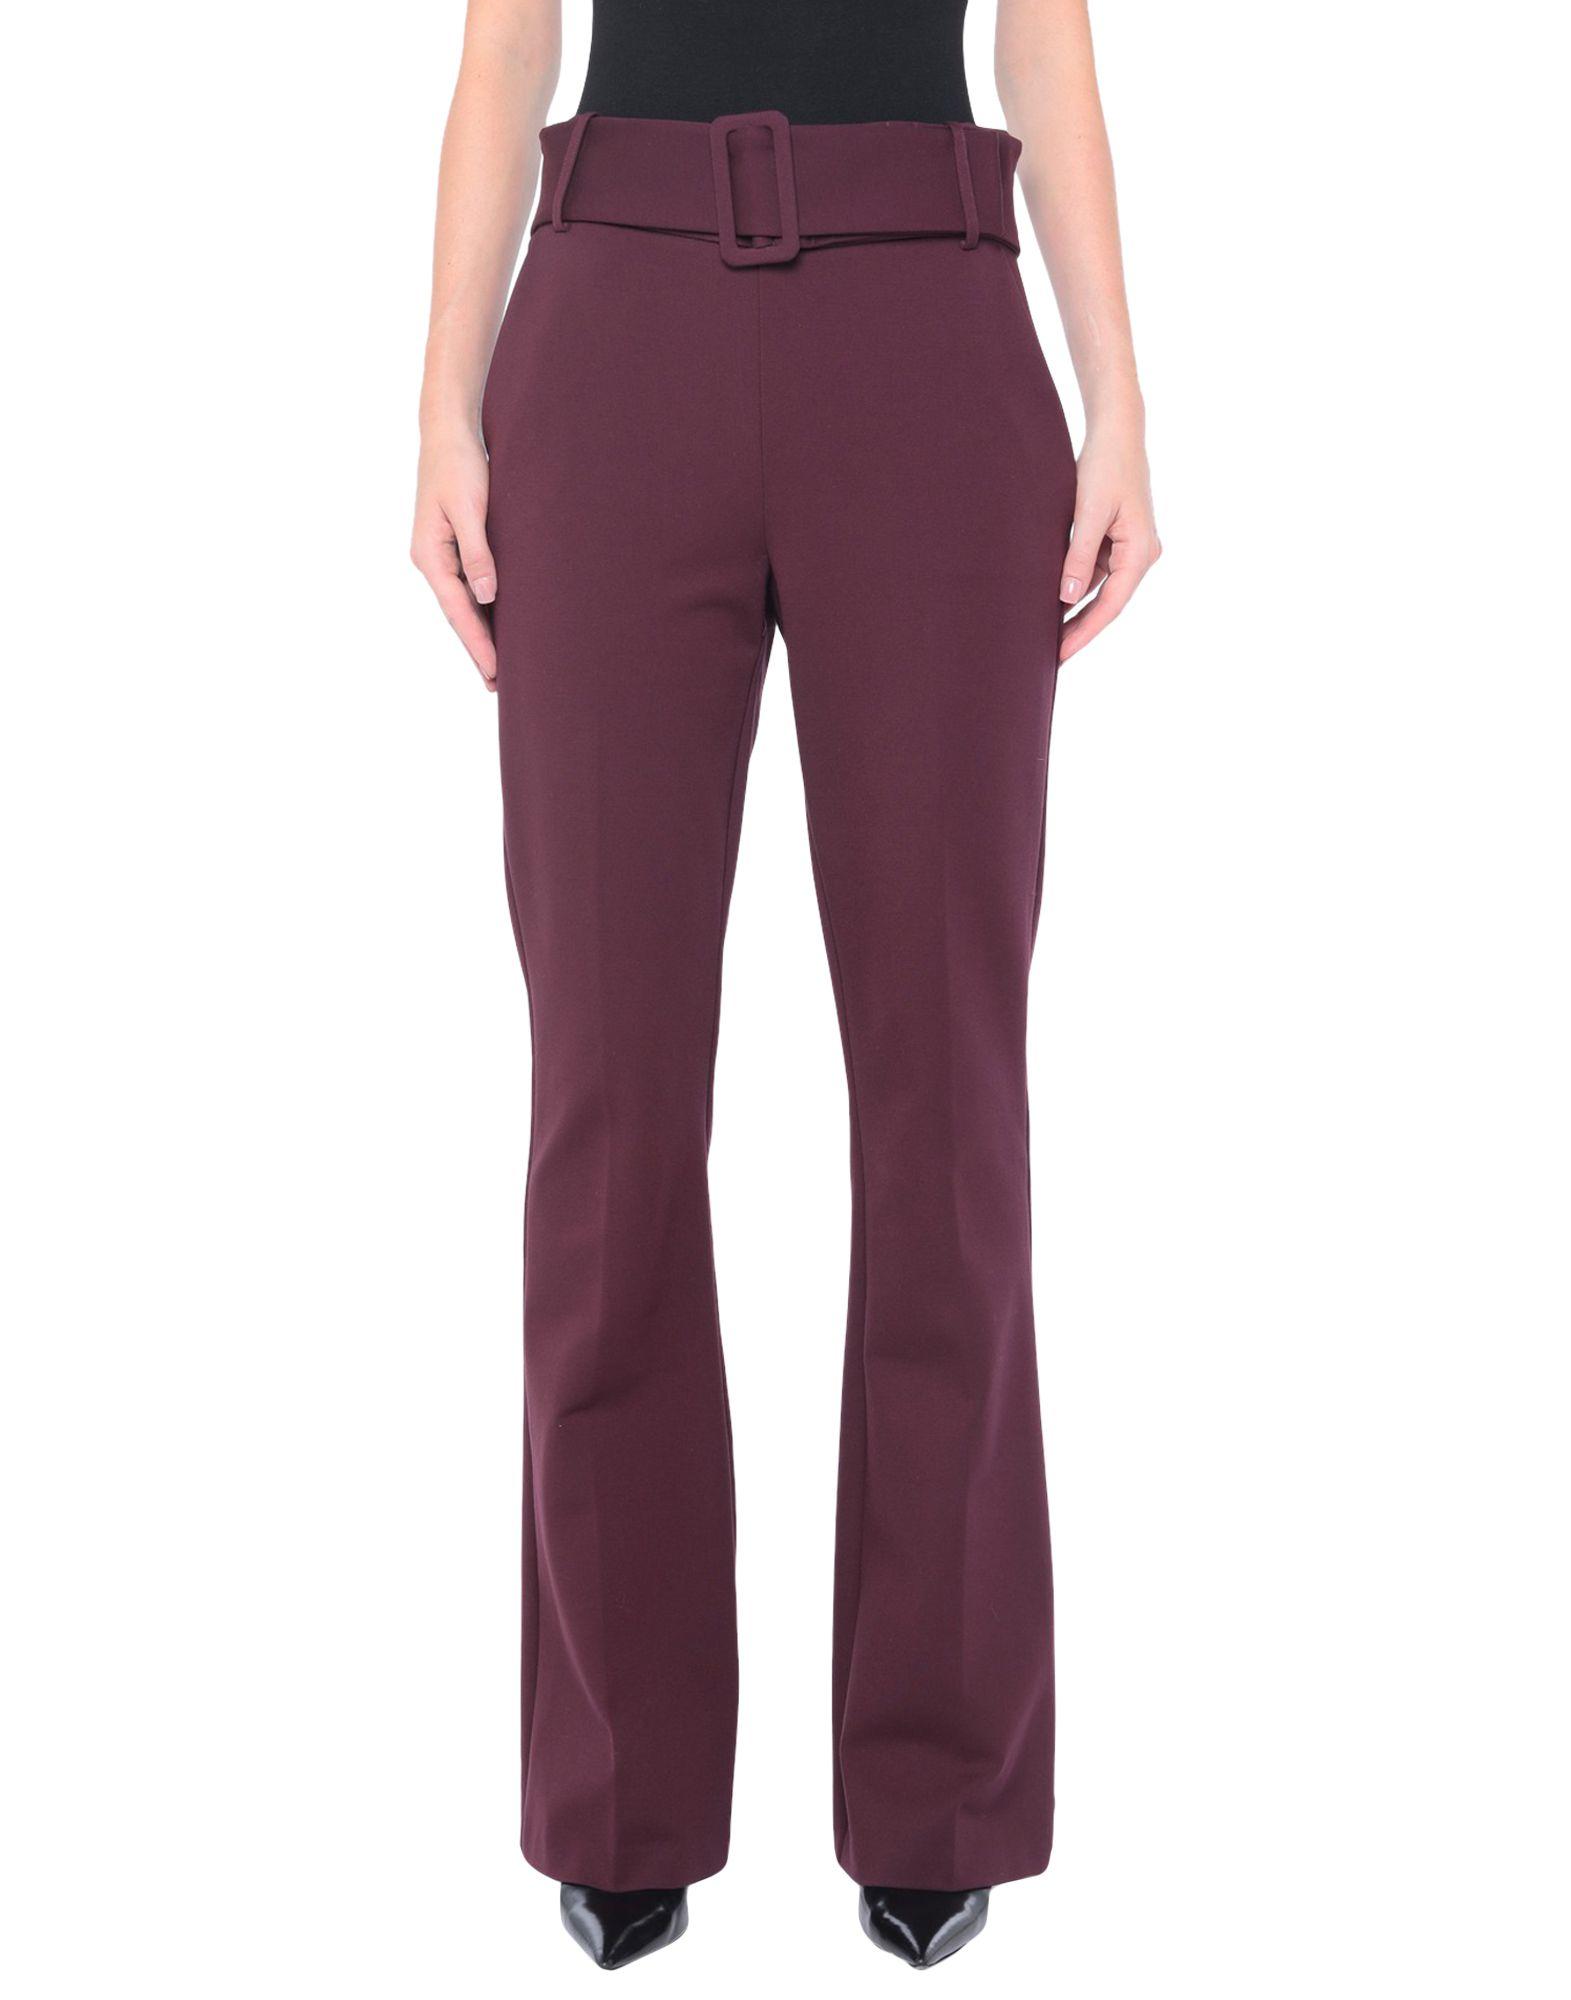 Marciano Synthetic Casual Trouser in Garnet (Purple) - Lyst